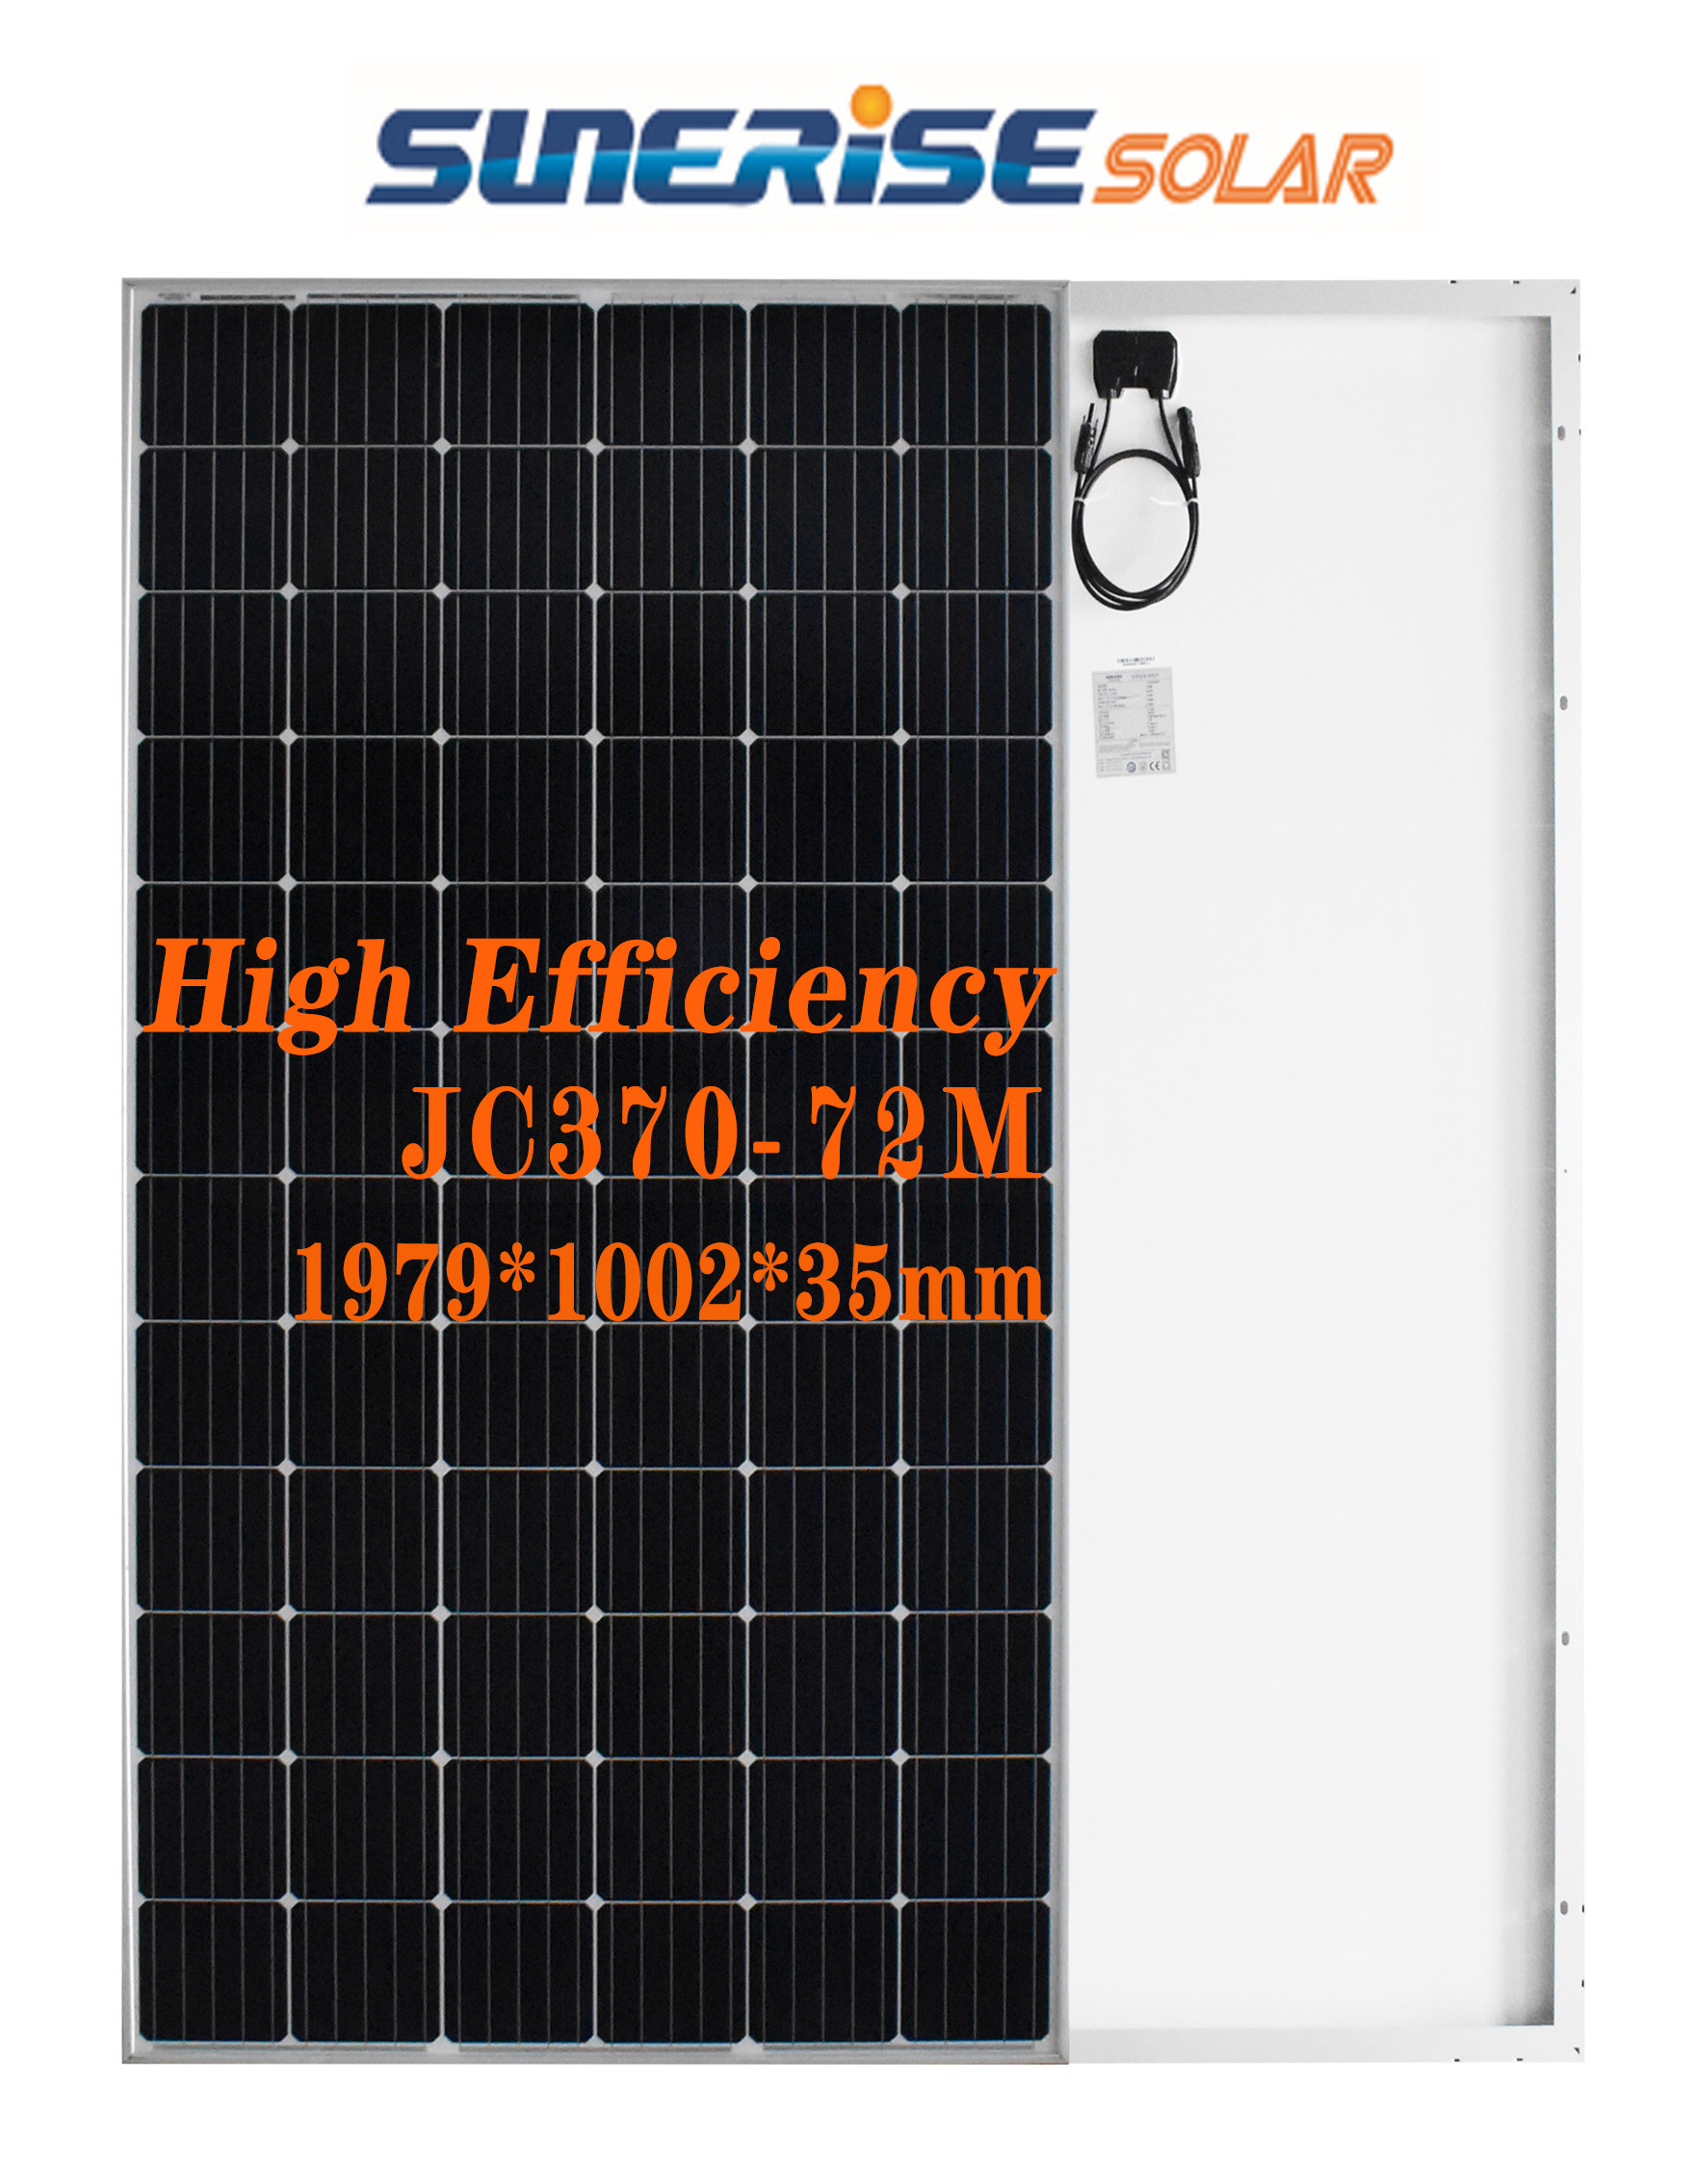 IP21 3KW Mono 370W Wifi Solar Photovoltaic Cell